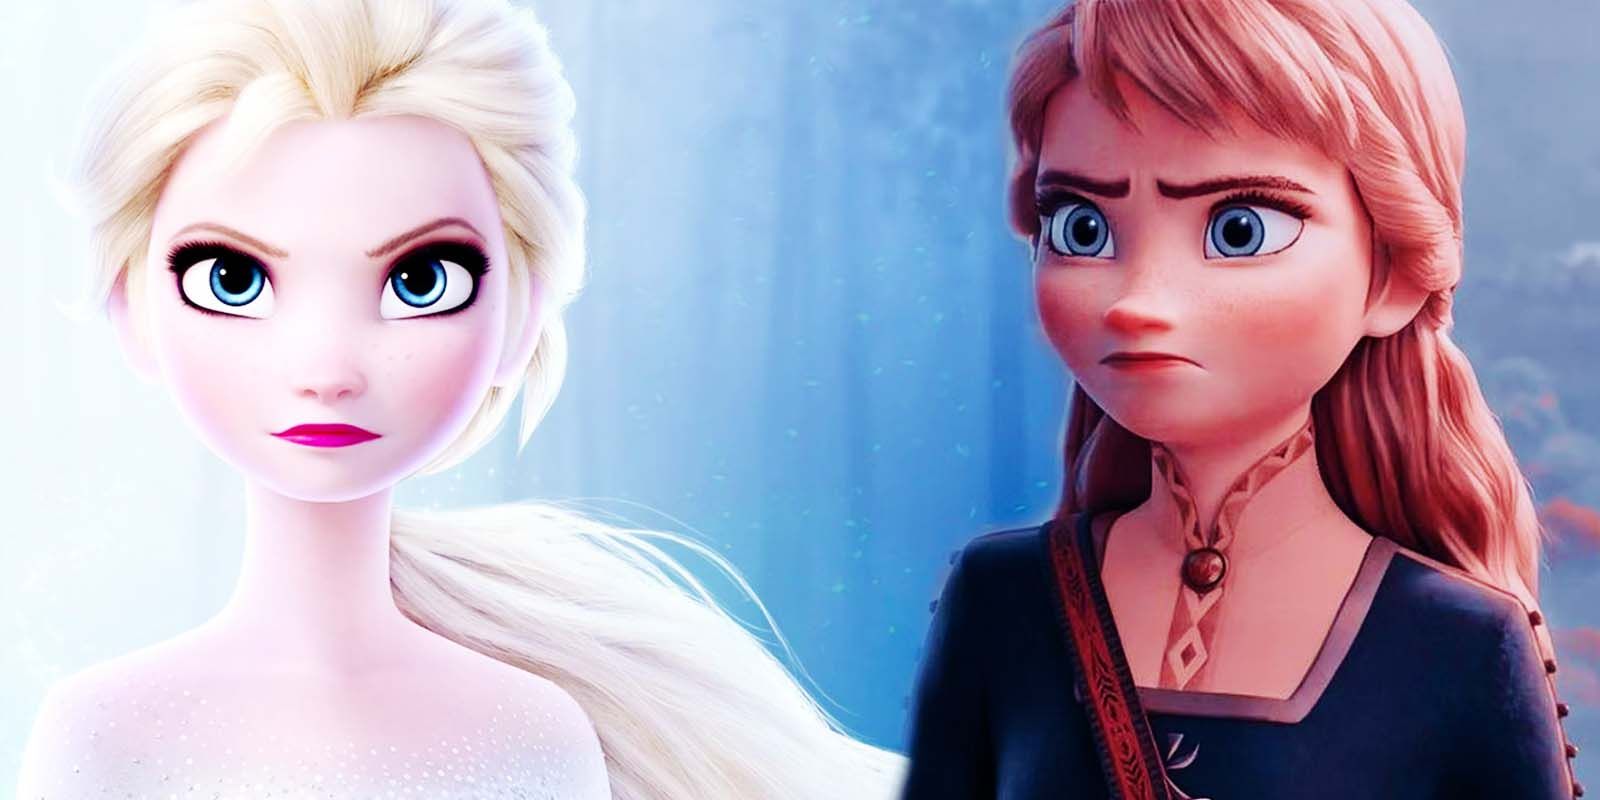 Elsa and Anna in 2013's Frozen II